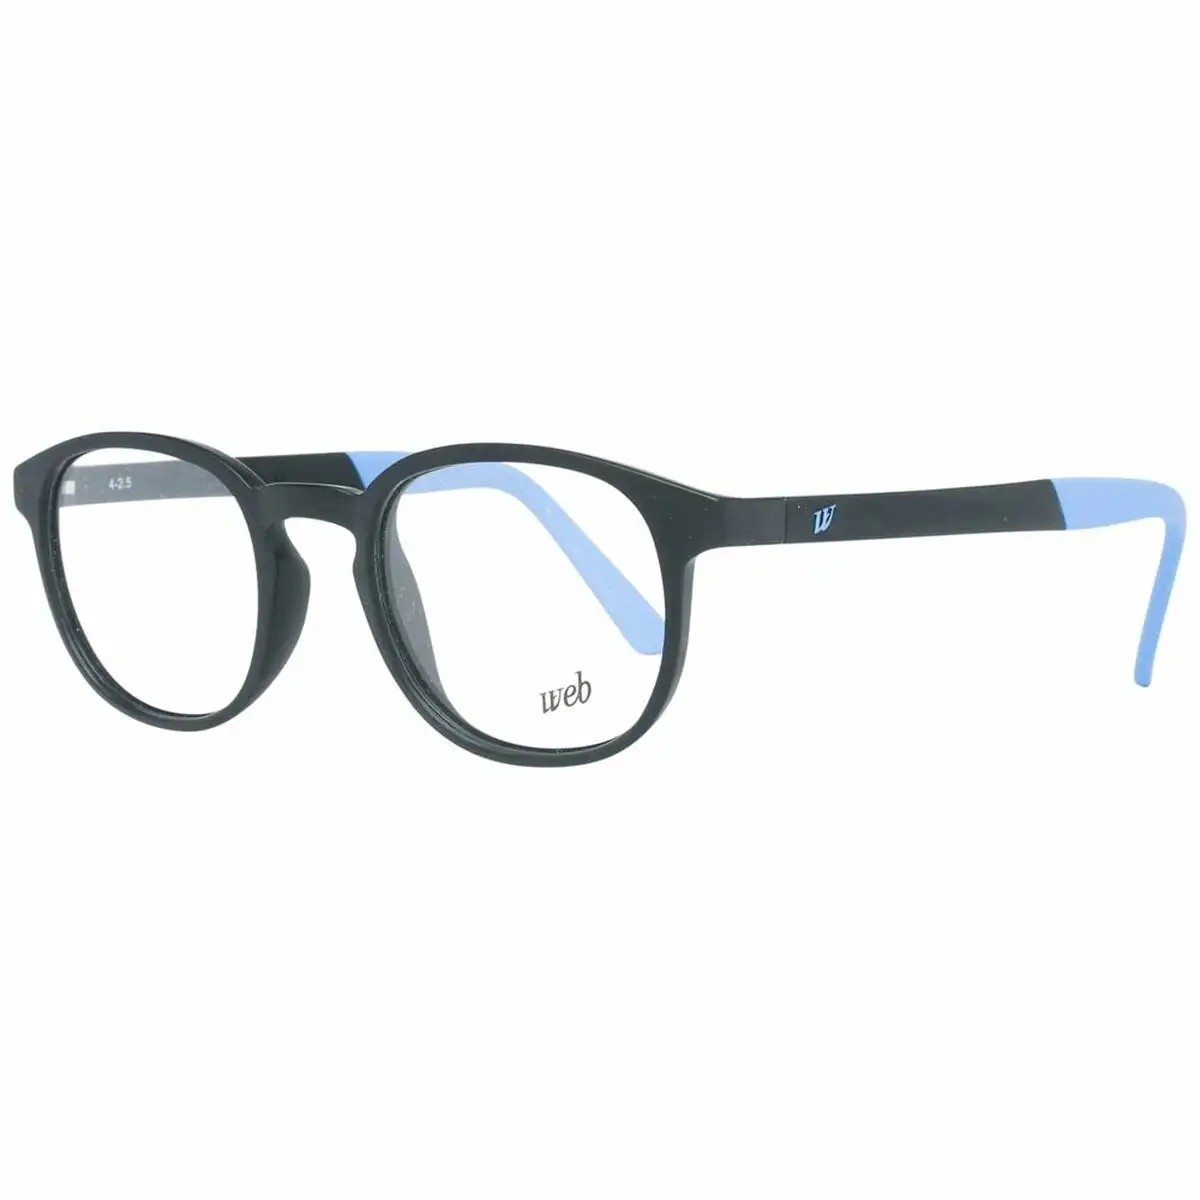 Monture de lunettes homme web eyewear we5185 47b02_5555. DIAYTAR SENEGAL - Là où Chaque Produit Évoque une Émotion. Parcourez notre catalogue et choisissez des articles qui vous touchent et qui enrichissent votre expérience.